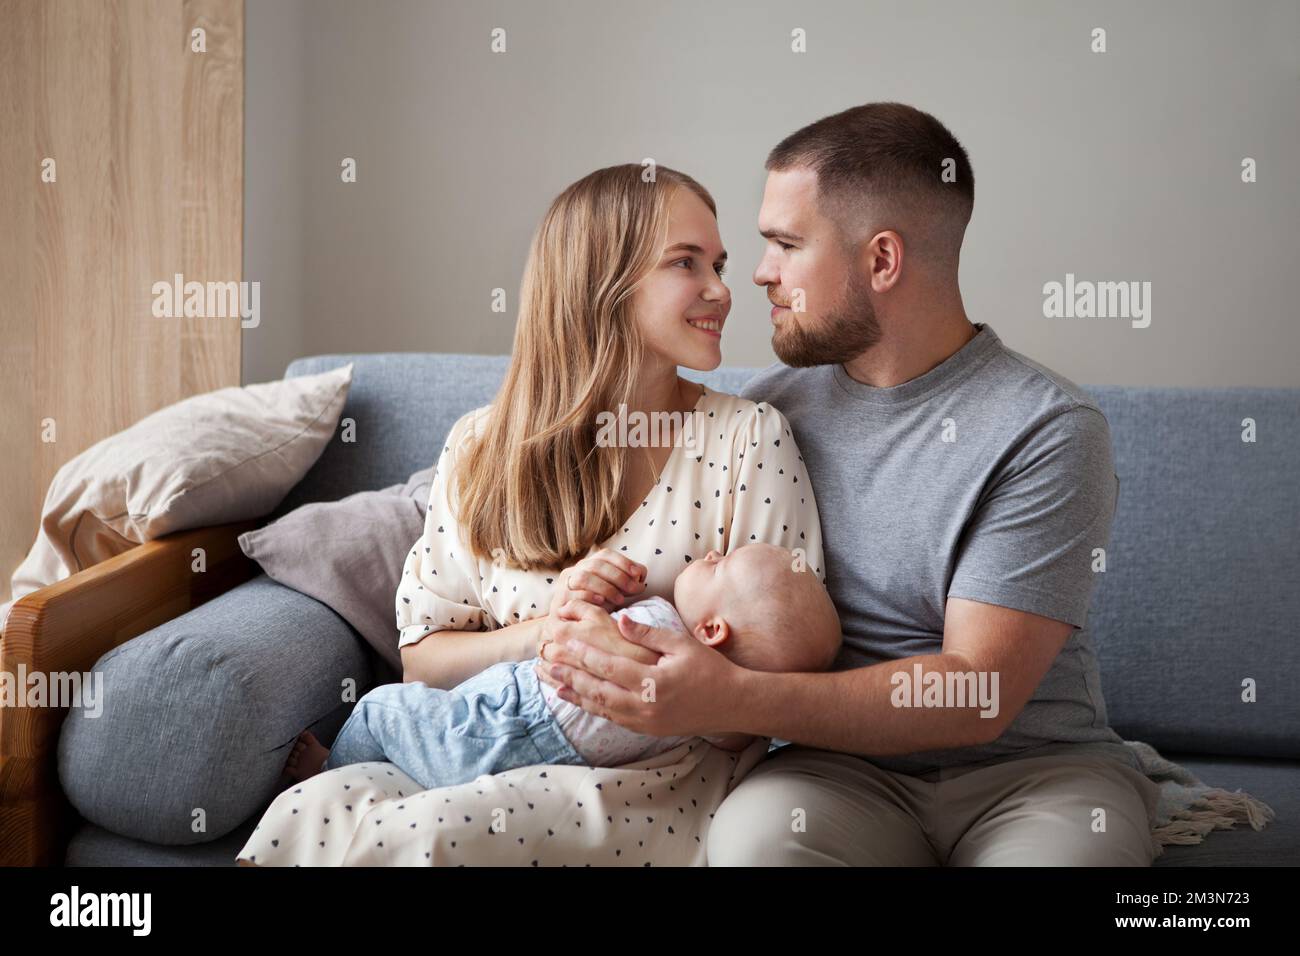 Glückliche Familie mit neugeborenem Baby. Eltern, eltern, eltern, eltern, halten ihr Baby in den Armen, lächeln und schauen sich an, wie sie zu Hause auf der Couch sitzen Stockfoto